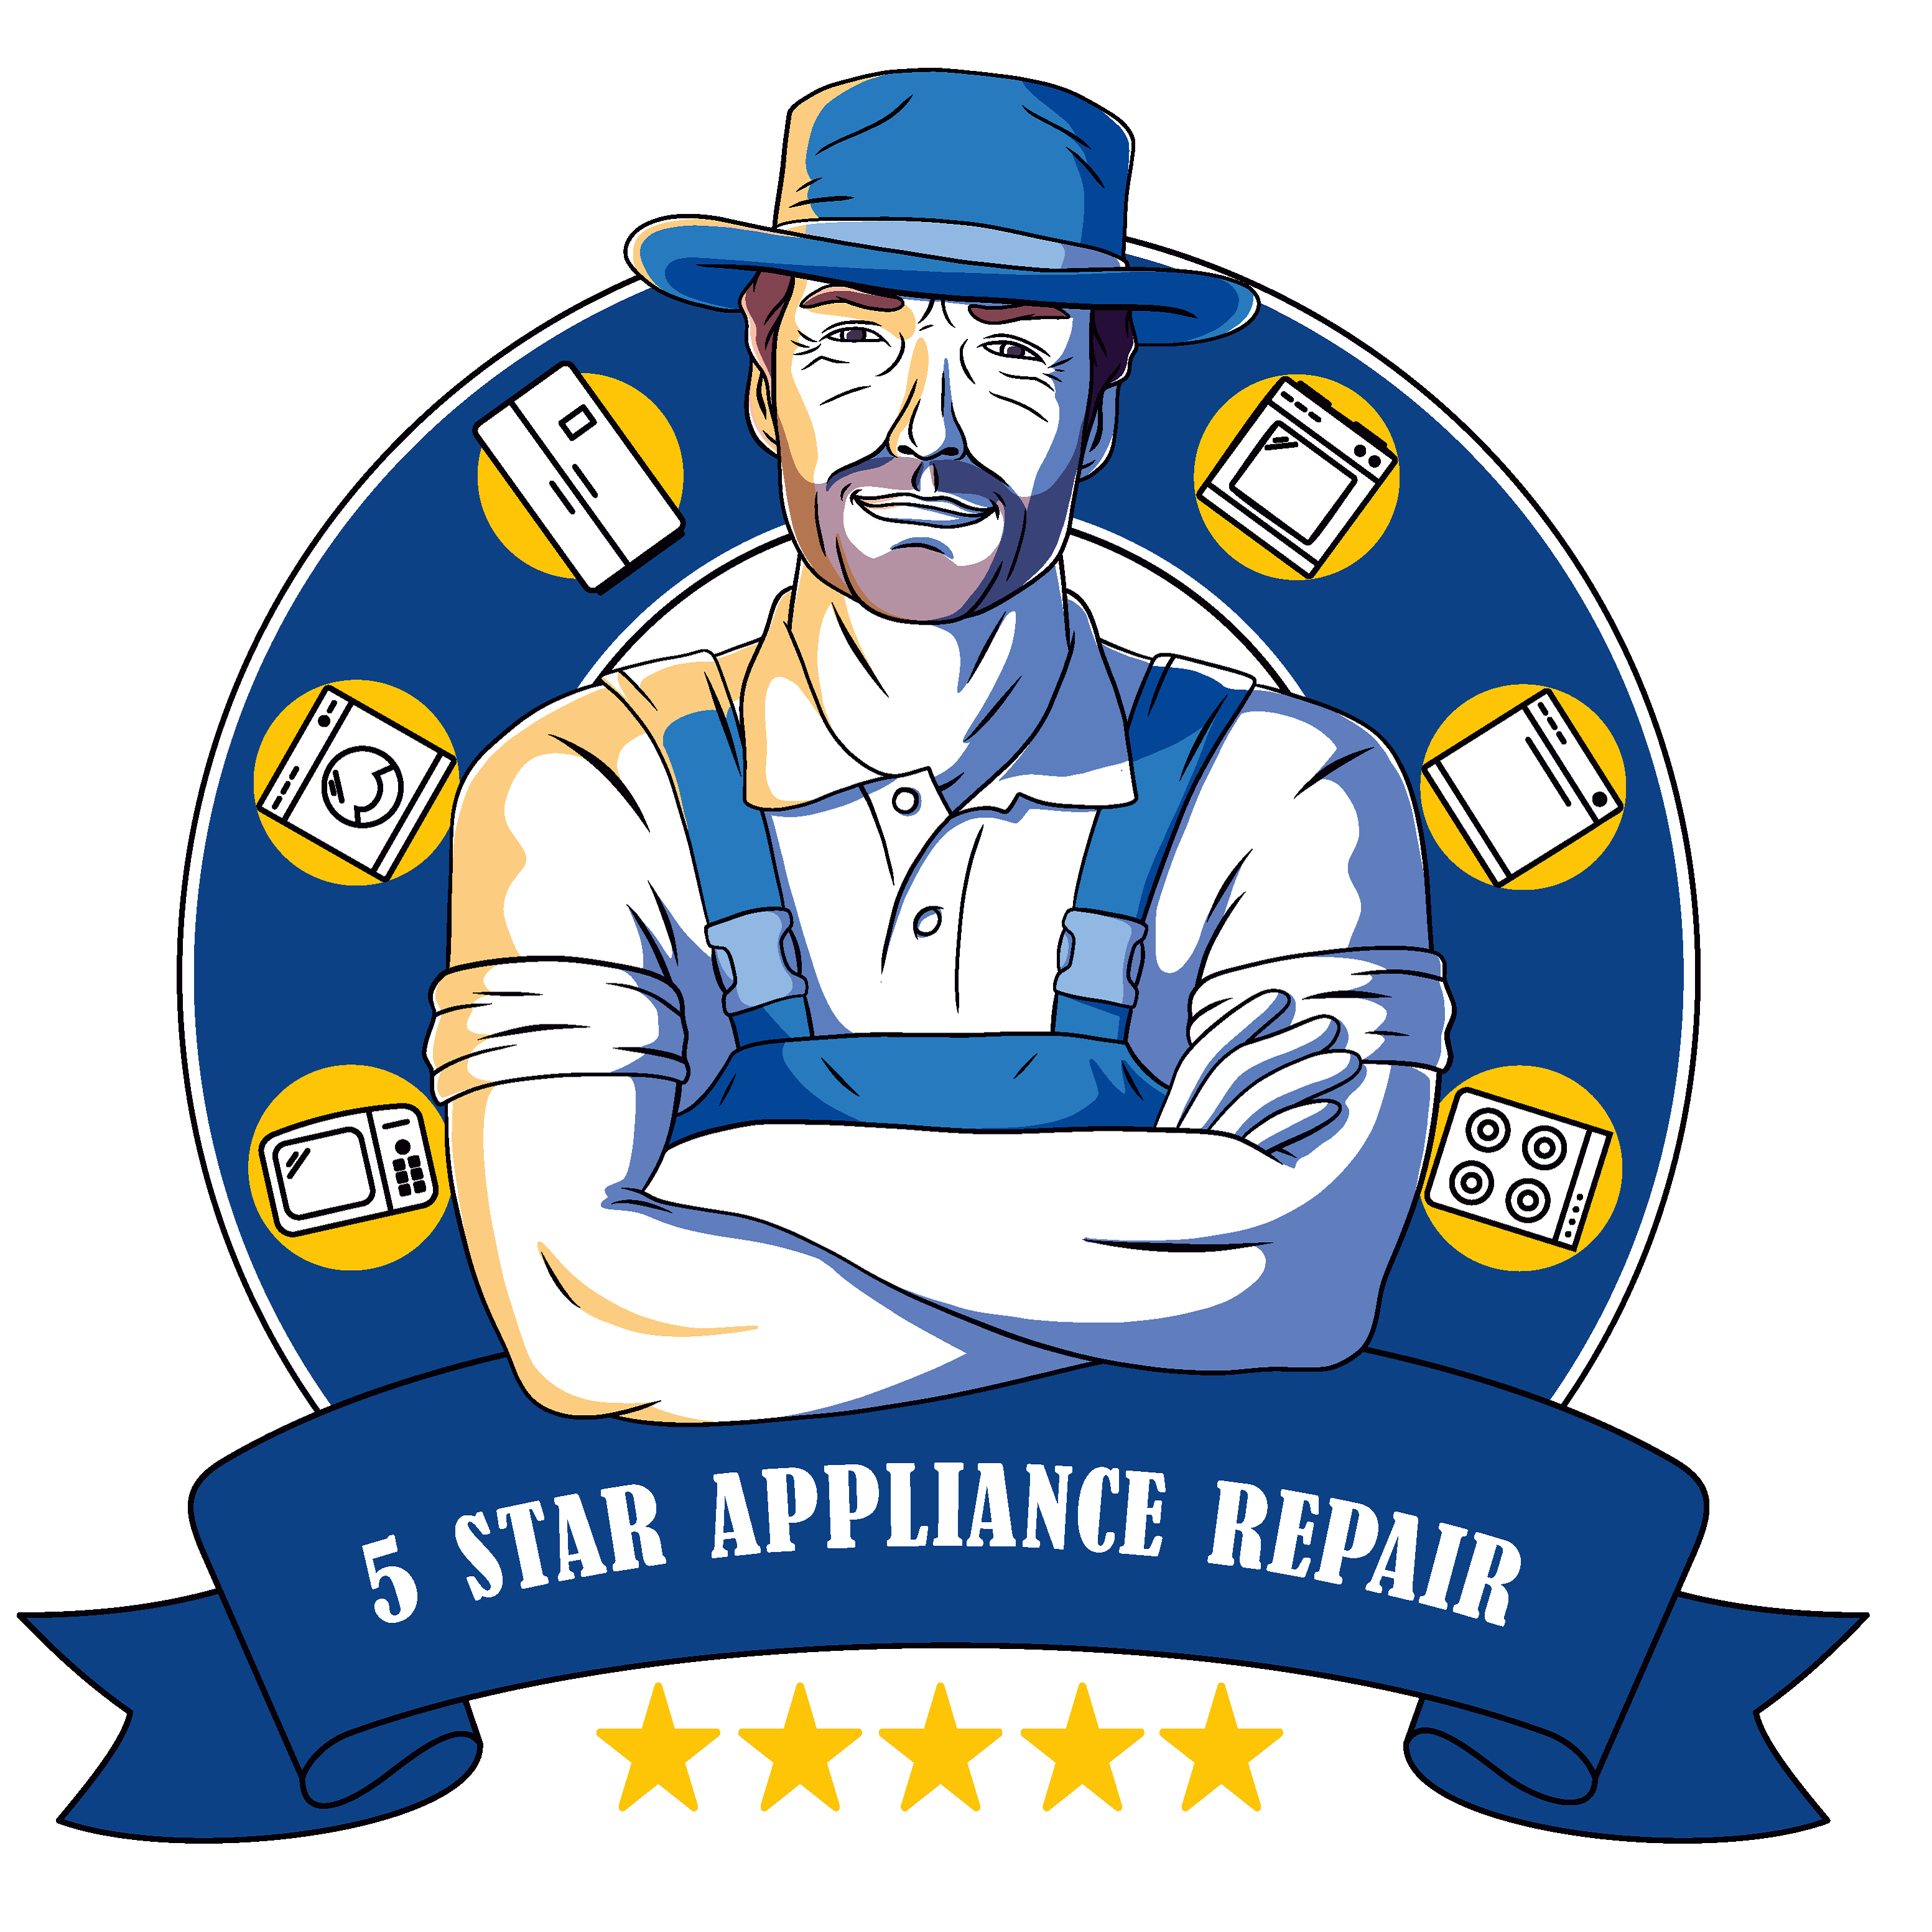 5 Star Appliance Repair Tucson NW